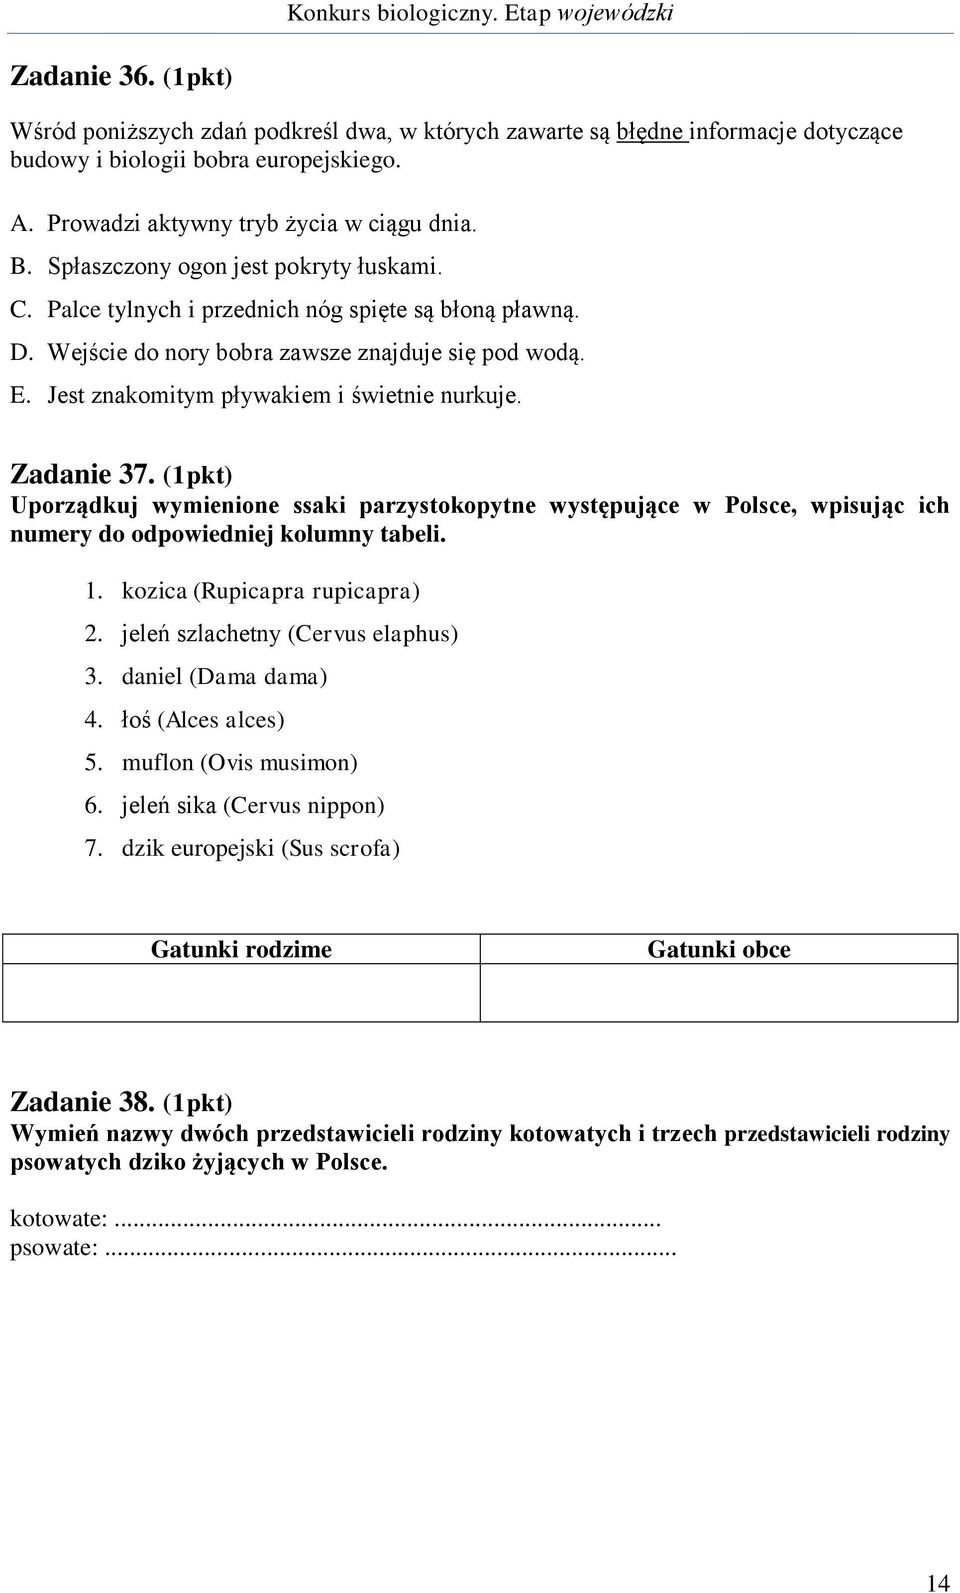 Zadanie 37. (1pkt) Uporządkuj wymienione ssaki parzystokopytne występujące w Polsce, wpisując ich numery do odpowiedniej kolumny tabeli. 1. kozica (Rupicapra rupicapra) 2.